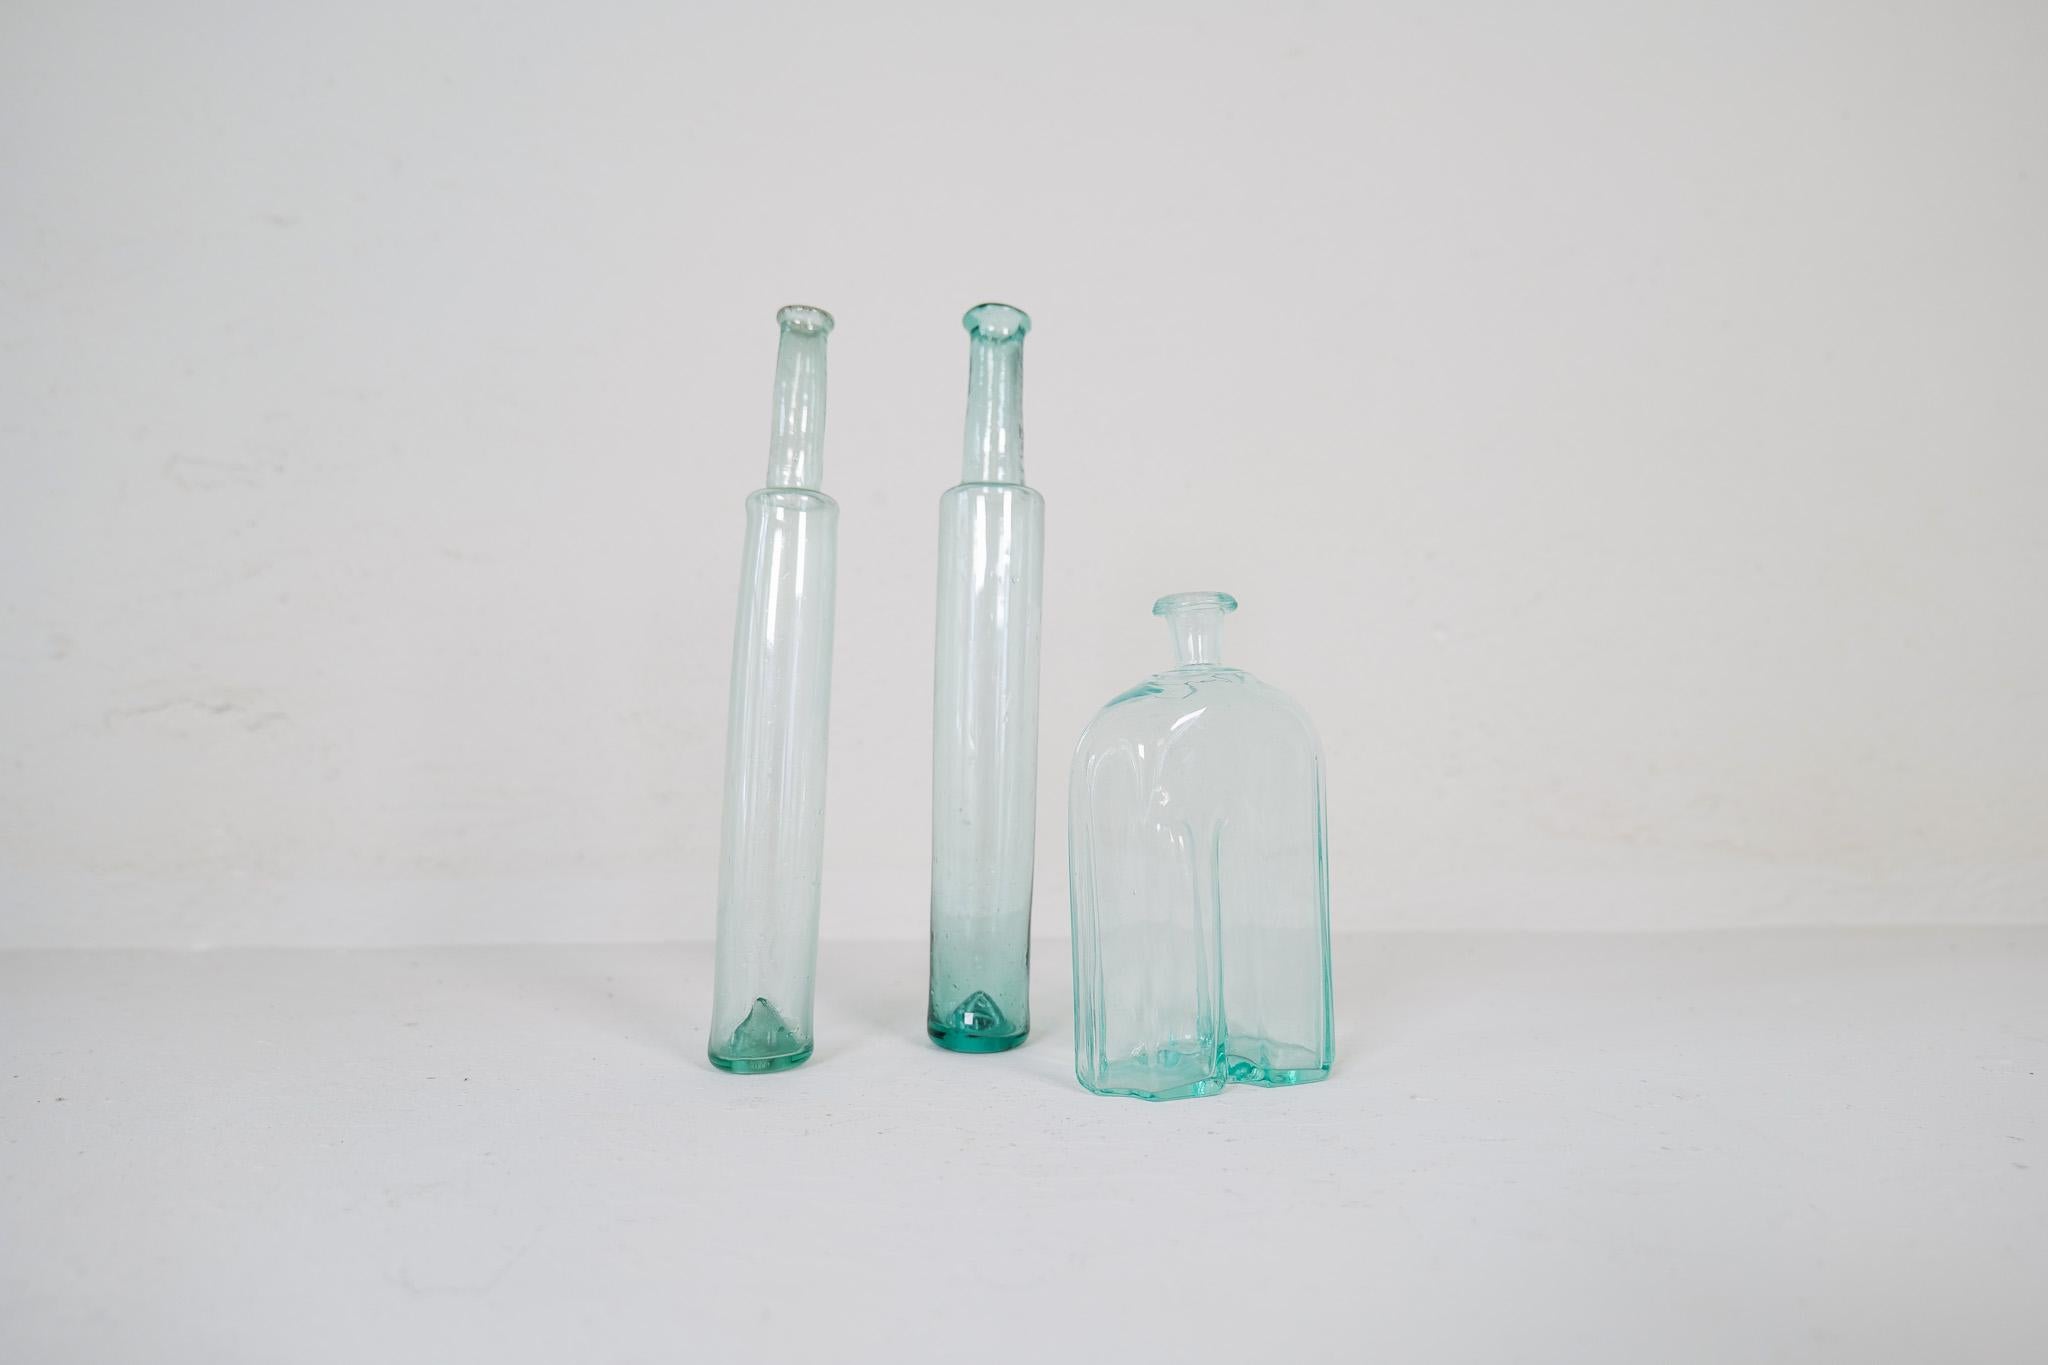 Cet ensemble de 3 bouteilles très décoratives a été fabriqué à la main en Suède au cours des années 1800. Les pièces donnent un aspect artistique lorsqu'elles sont assemblées. 

Vintage By, elles ne sont pas faites avec un fond droit et doivent être